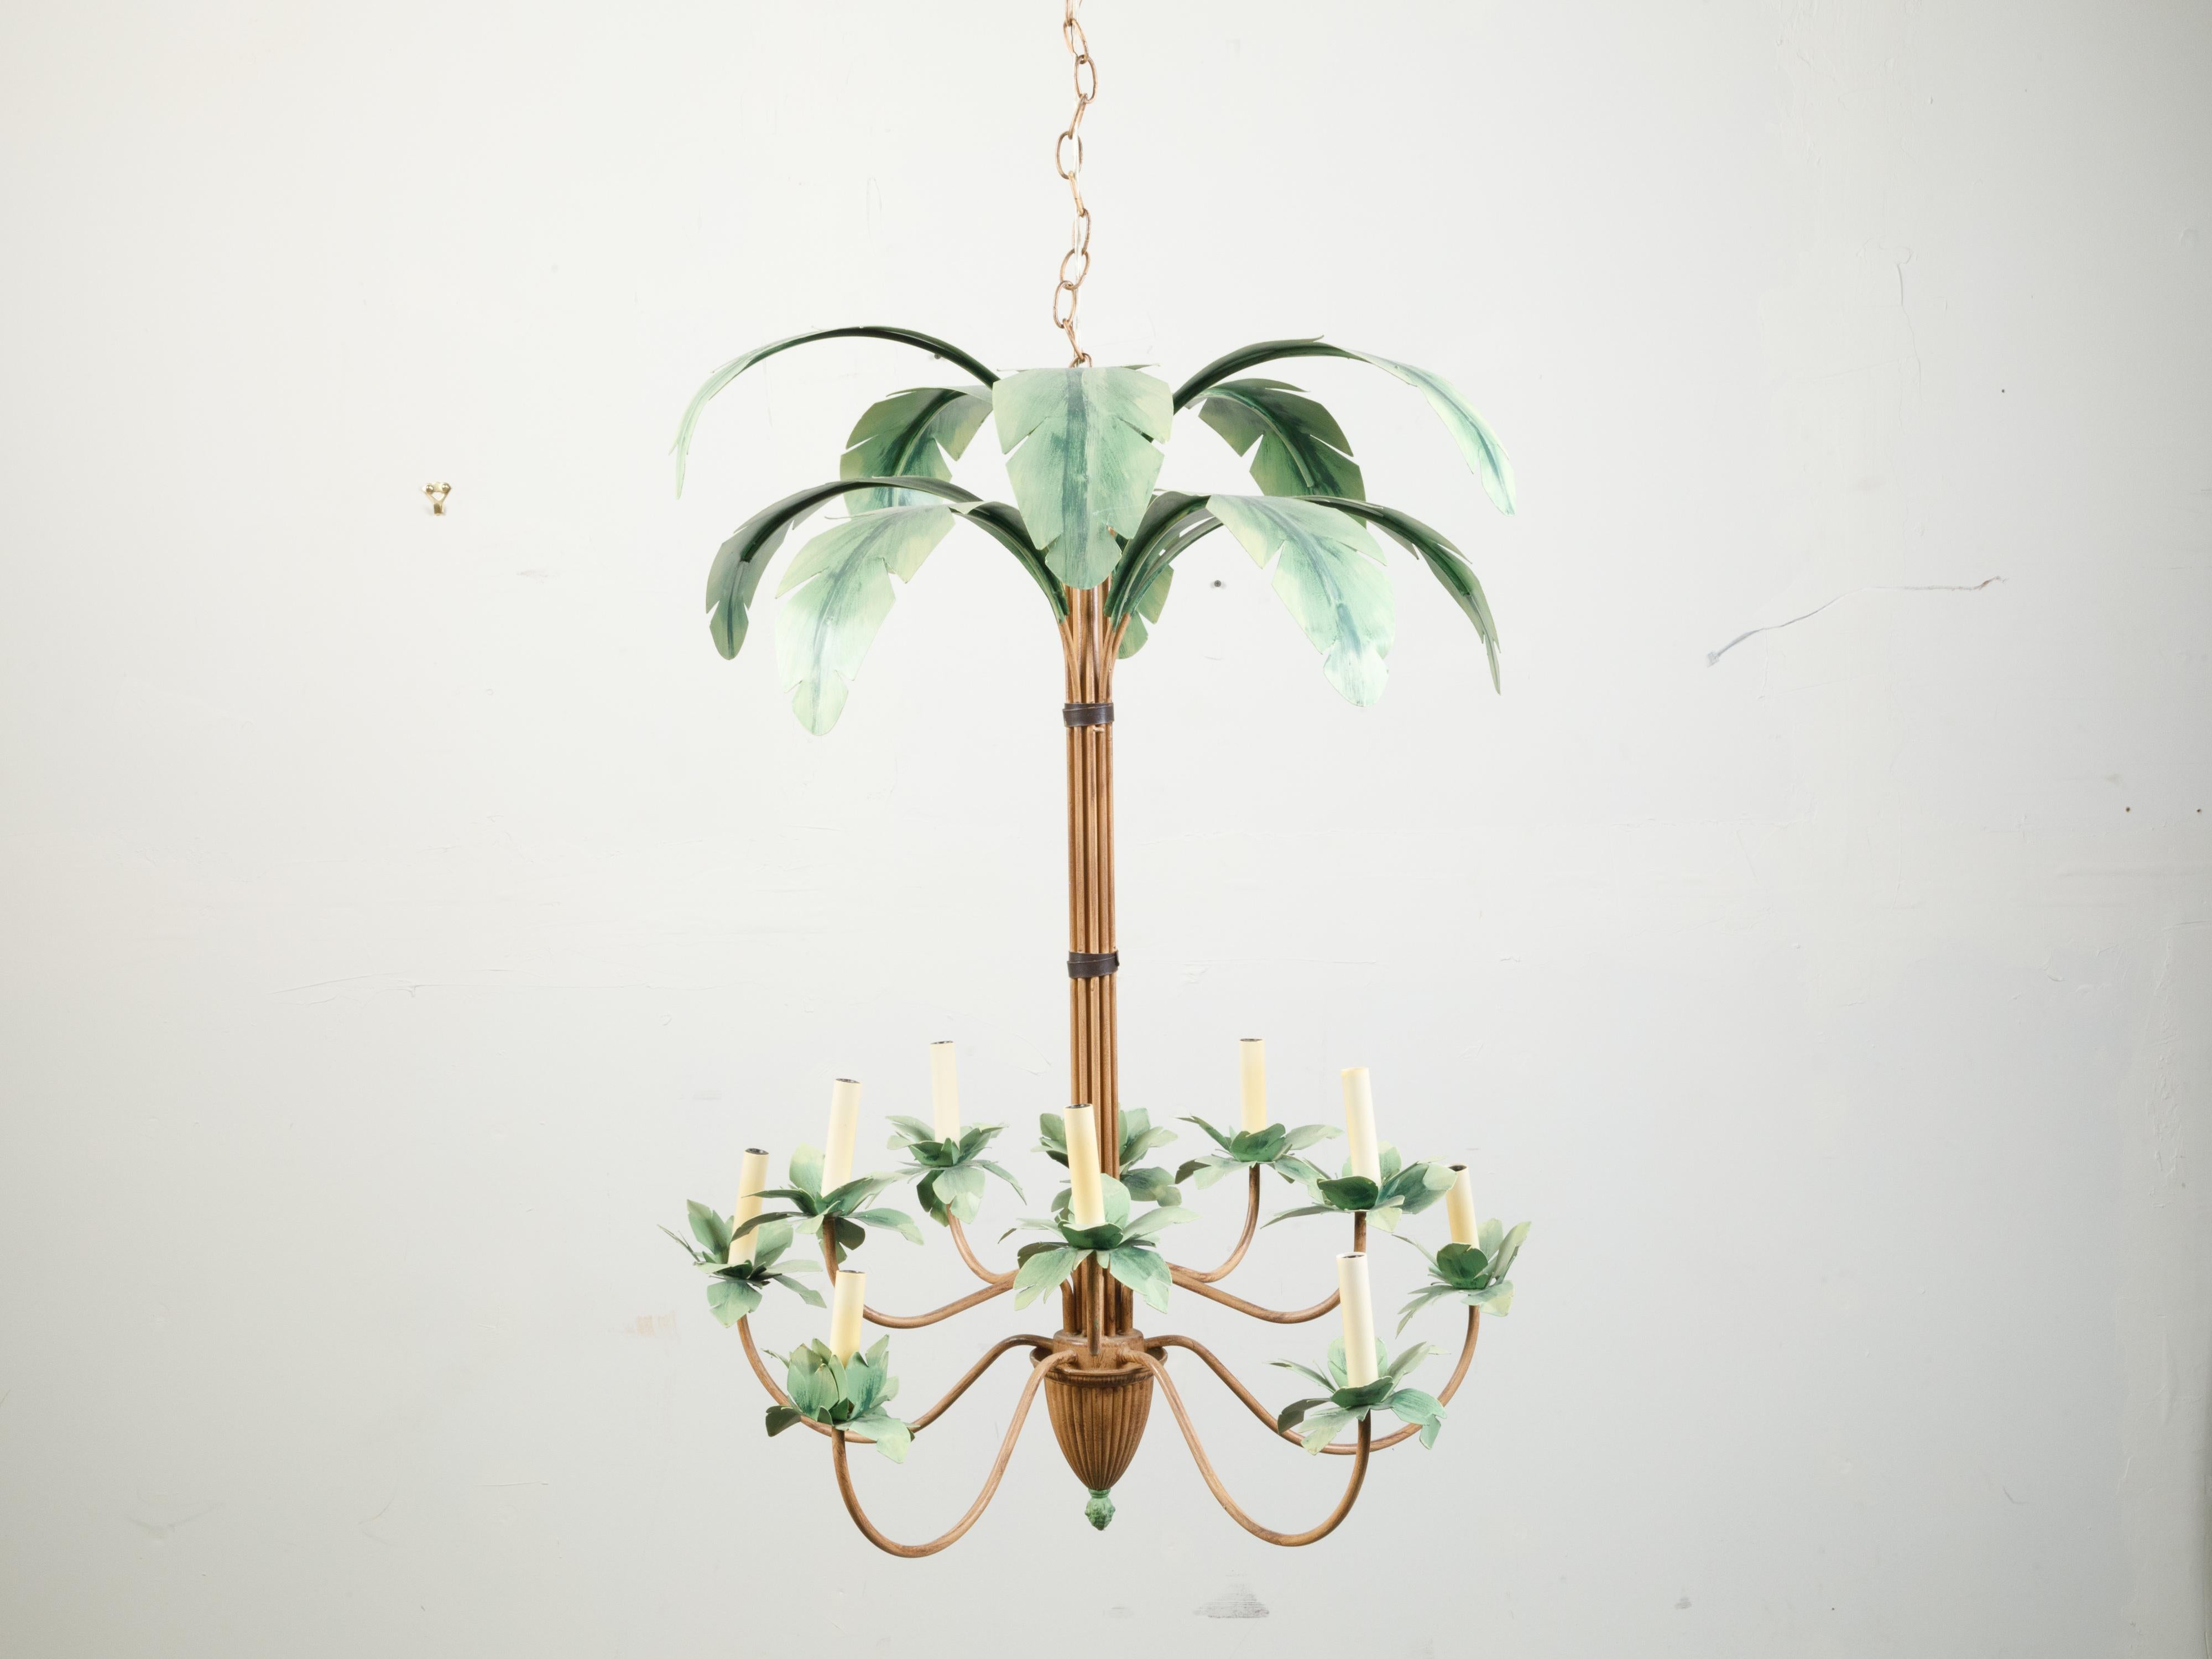 Un luminaire vintage en forme de palmier tôle peint du milieu du 20e siècle, avec 10 lumières et des bras en forme de poire. Créé au milieu du siècle dernier, ce luminaire attire notre attention par sa silhouette de palmier tôle peinte supportant 10